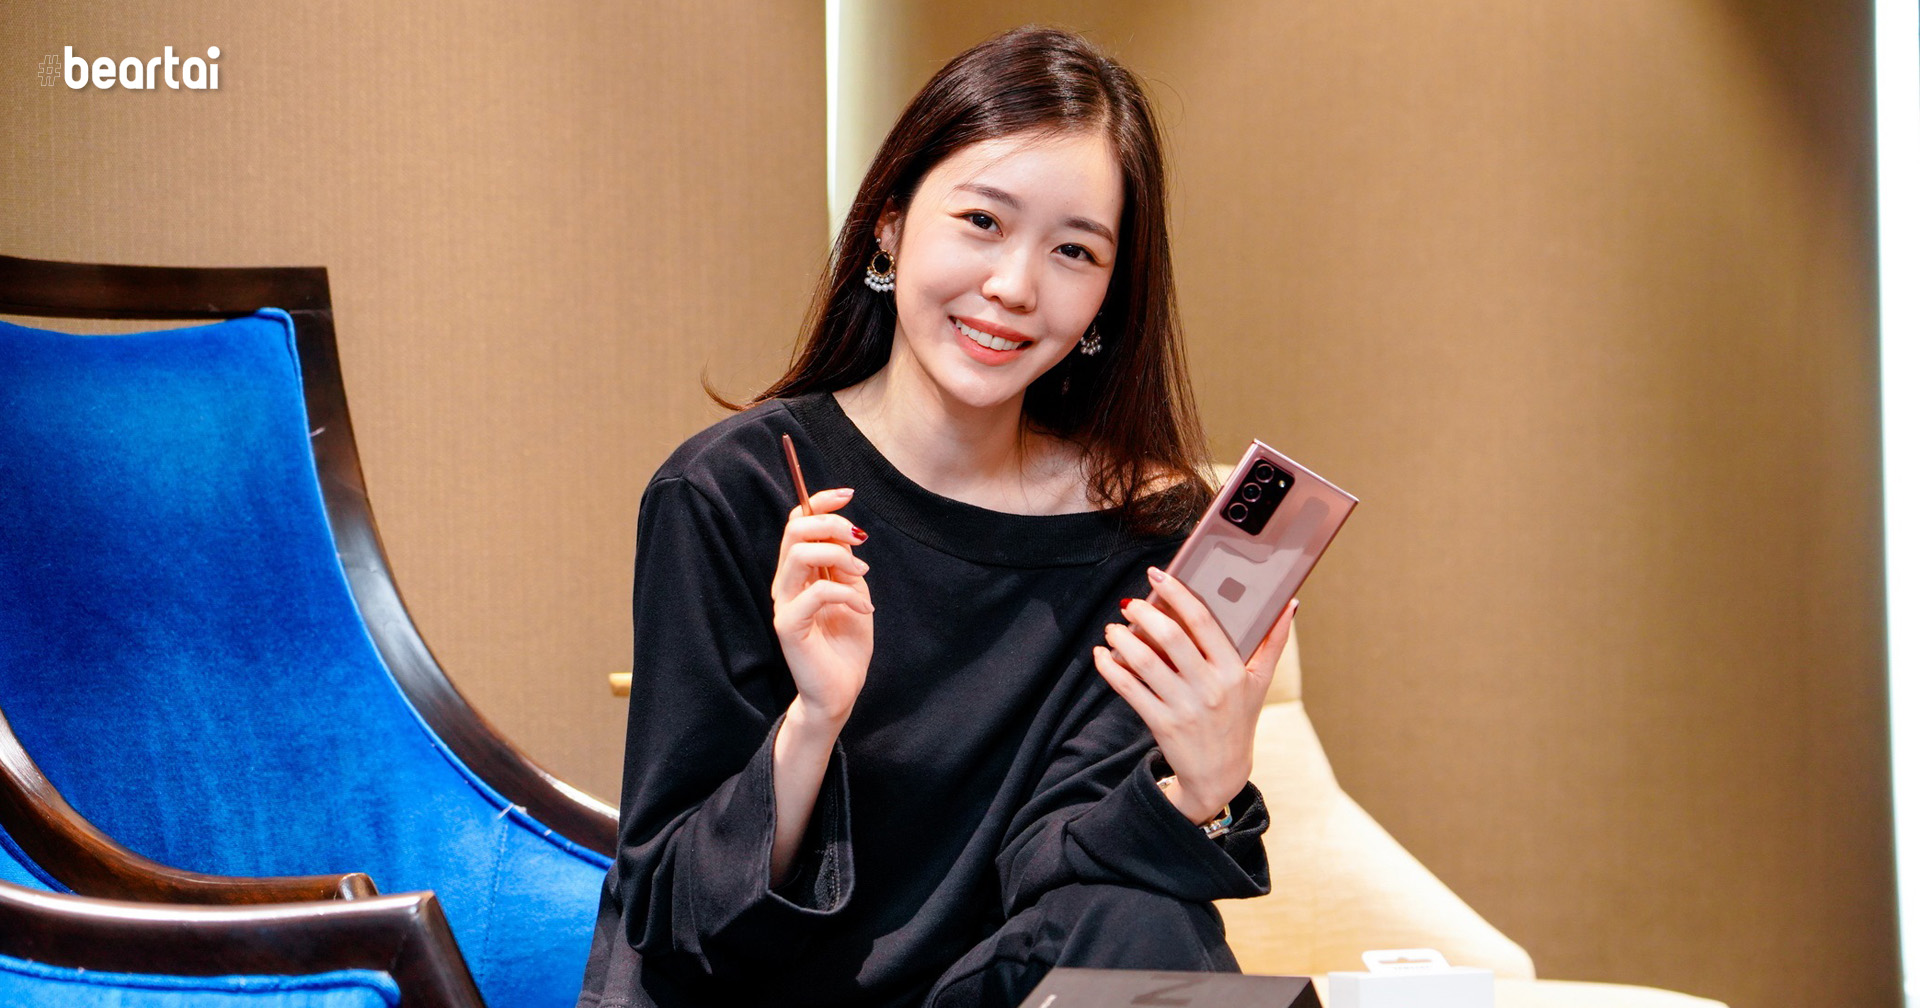 โน้ตแฟนโดนใจ! ยกให้ S Pen คือฟีเจอร์ที่ใช่ เผยโฉมคนกลุ่มแรกของไทยที่ได้เป็นเจ้าของซัมซุง Galaxy Note20 Series